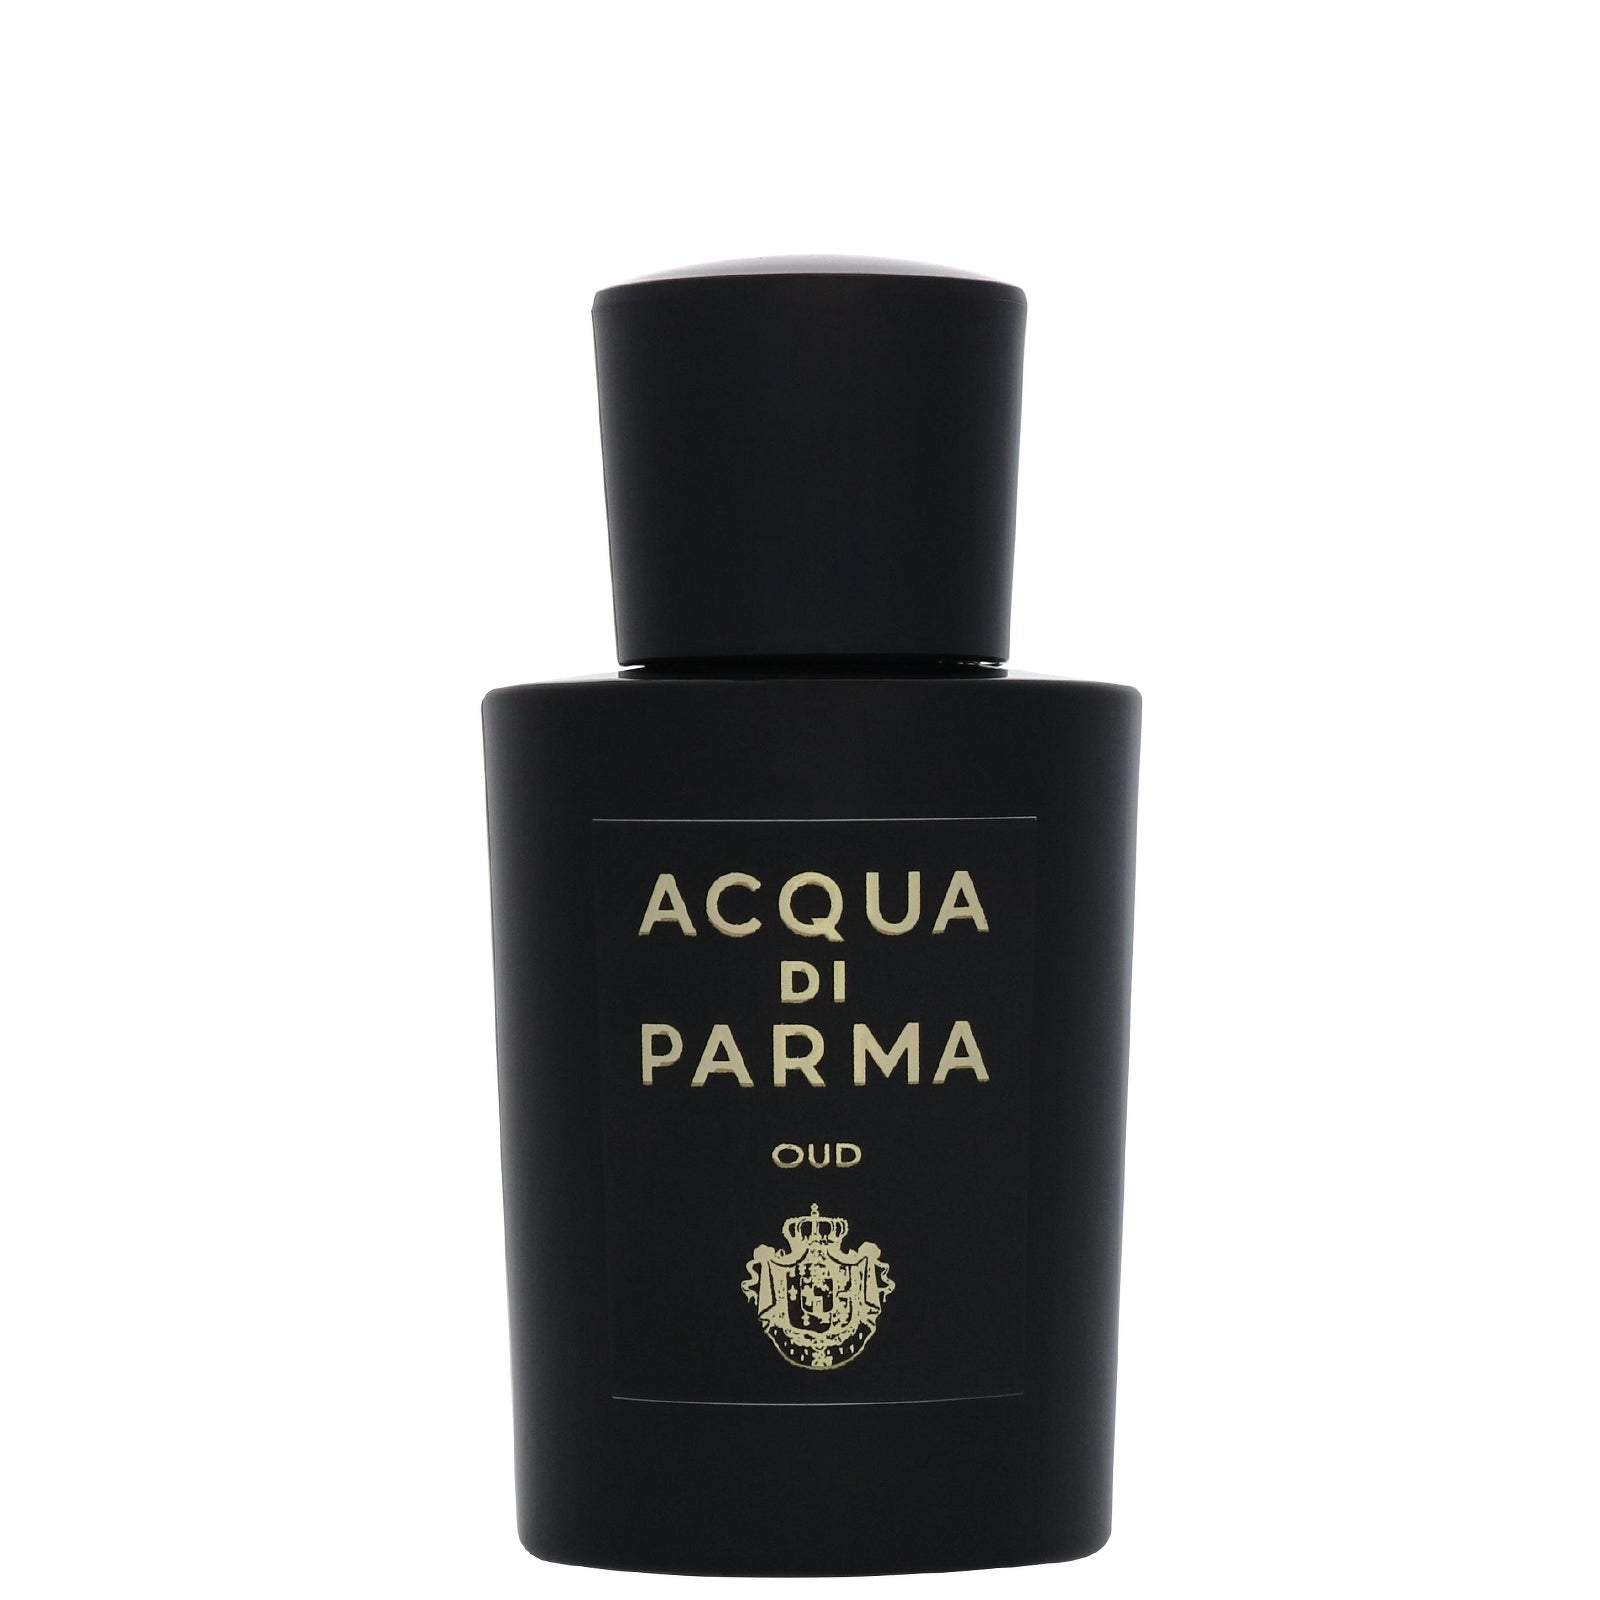 Acqua Di Parma Oud Eau de Parfum 100ml - Feel Gorgeous